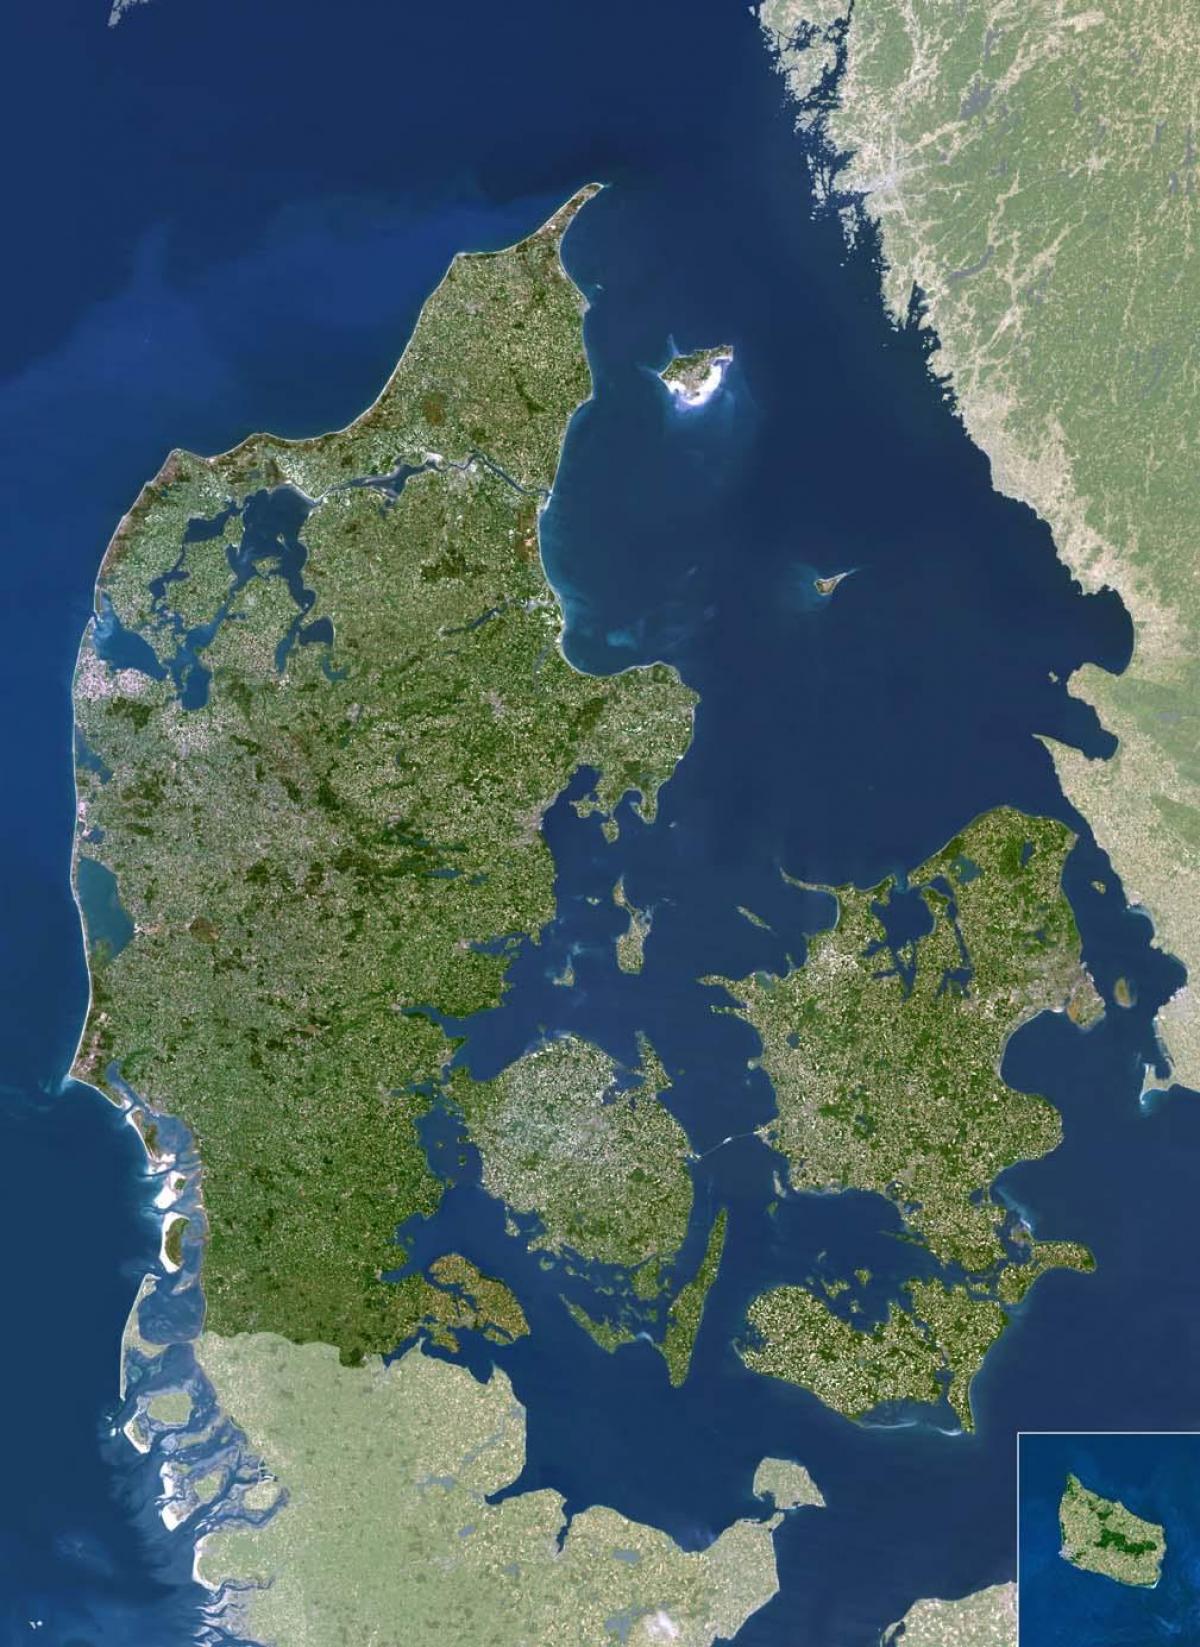 Tanska satelliitti kartta - Kartta tanska satelliitti (Pohjois-Eurooppa -  Eurooppa)